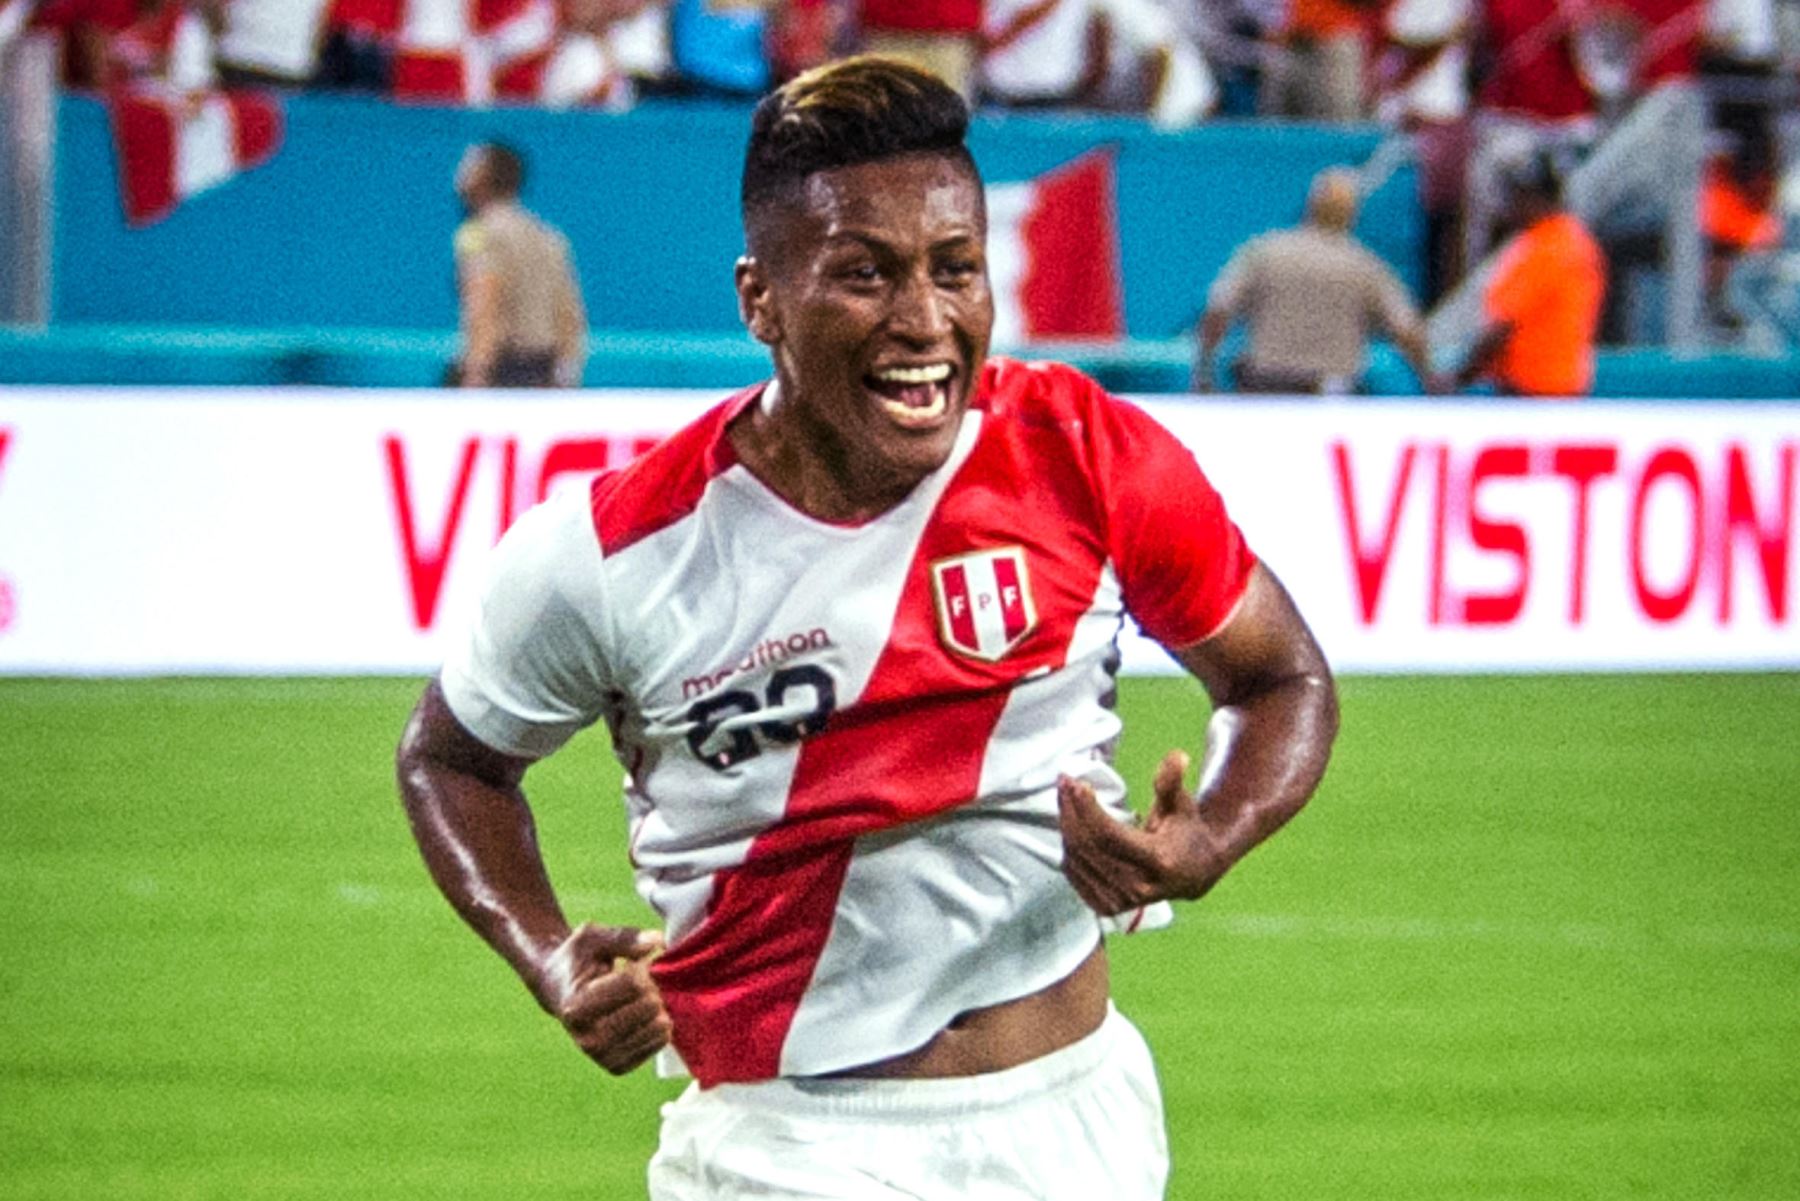 La selección de Perú venció por 3-0 a Chile en partido amistoso disputado en el Hard Rock Stadium de Miami, en Estados Unidos.Foto:ANDINA/ FPF